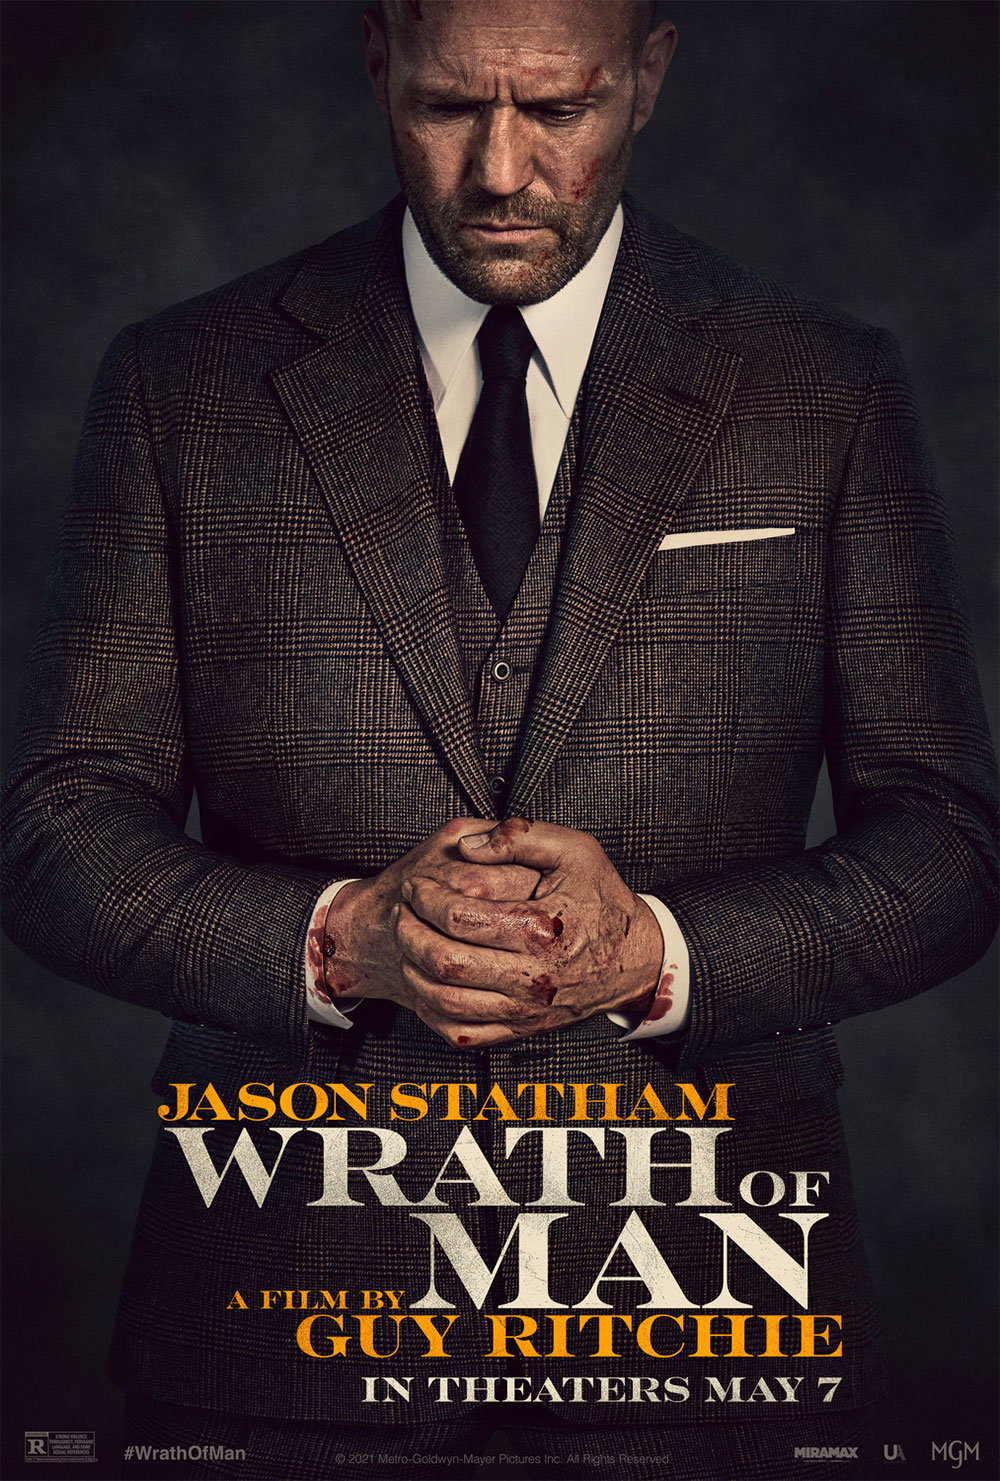 In foto Jason Statham (57 anni) Dall'articolo: Wrath of Man, il poster originale del film.